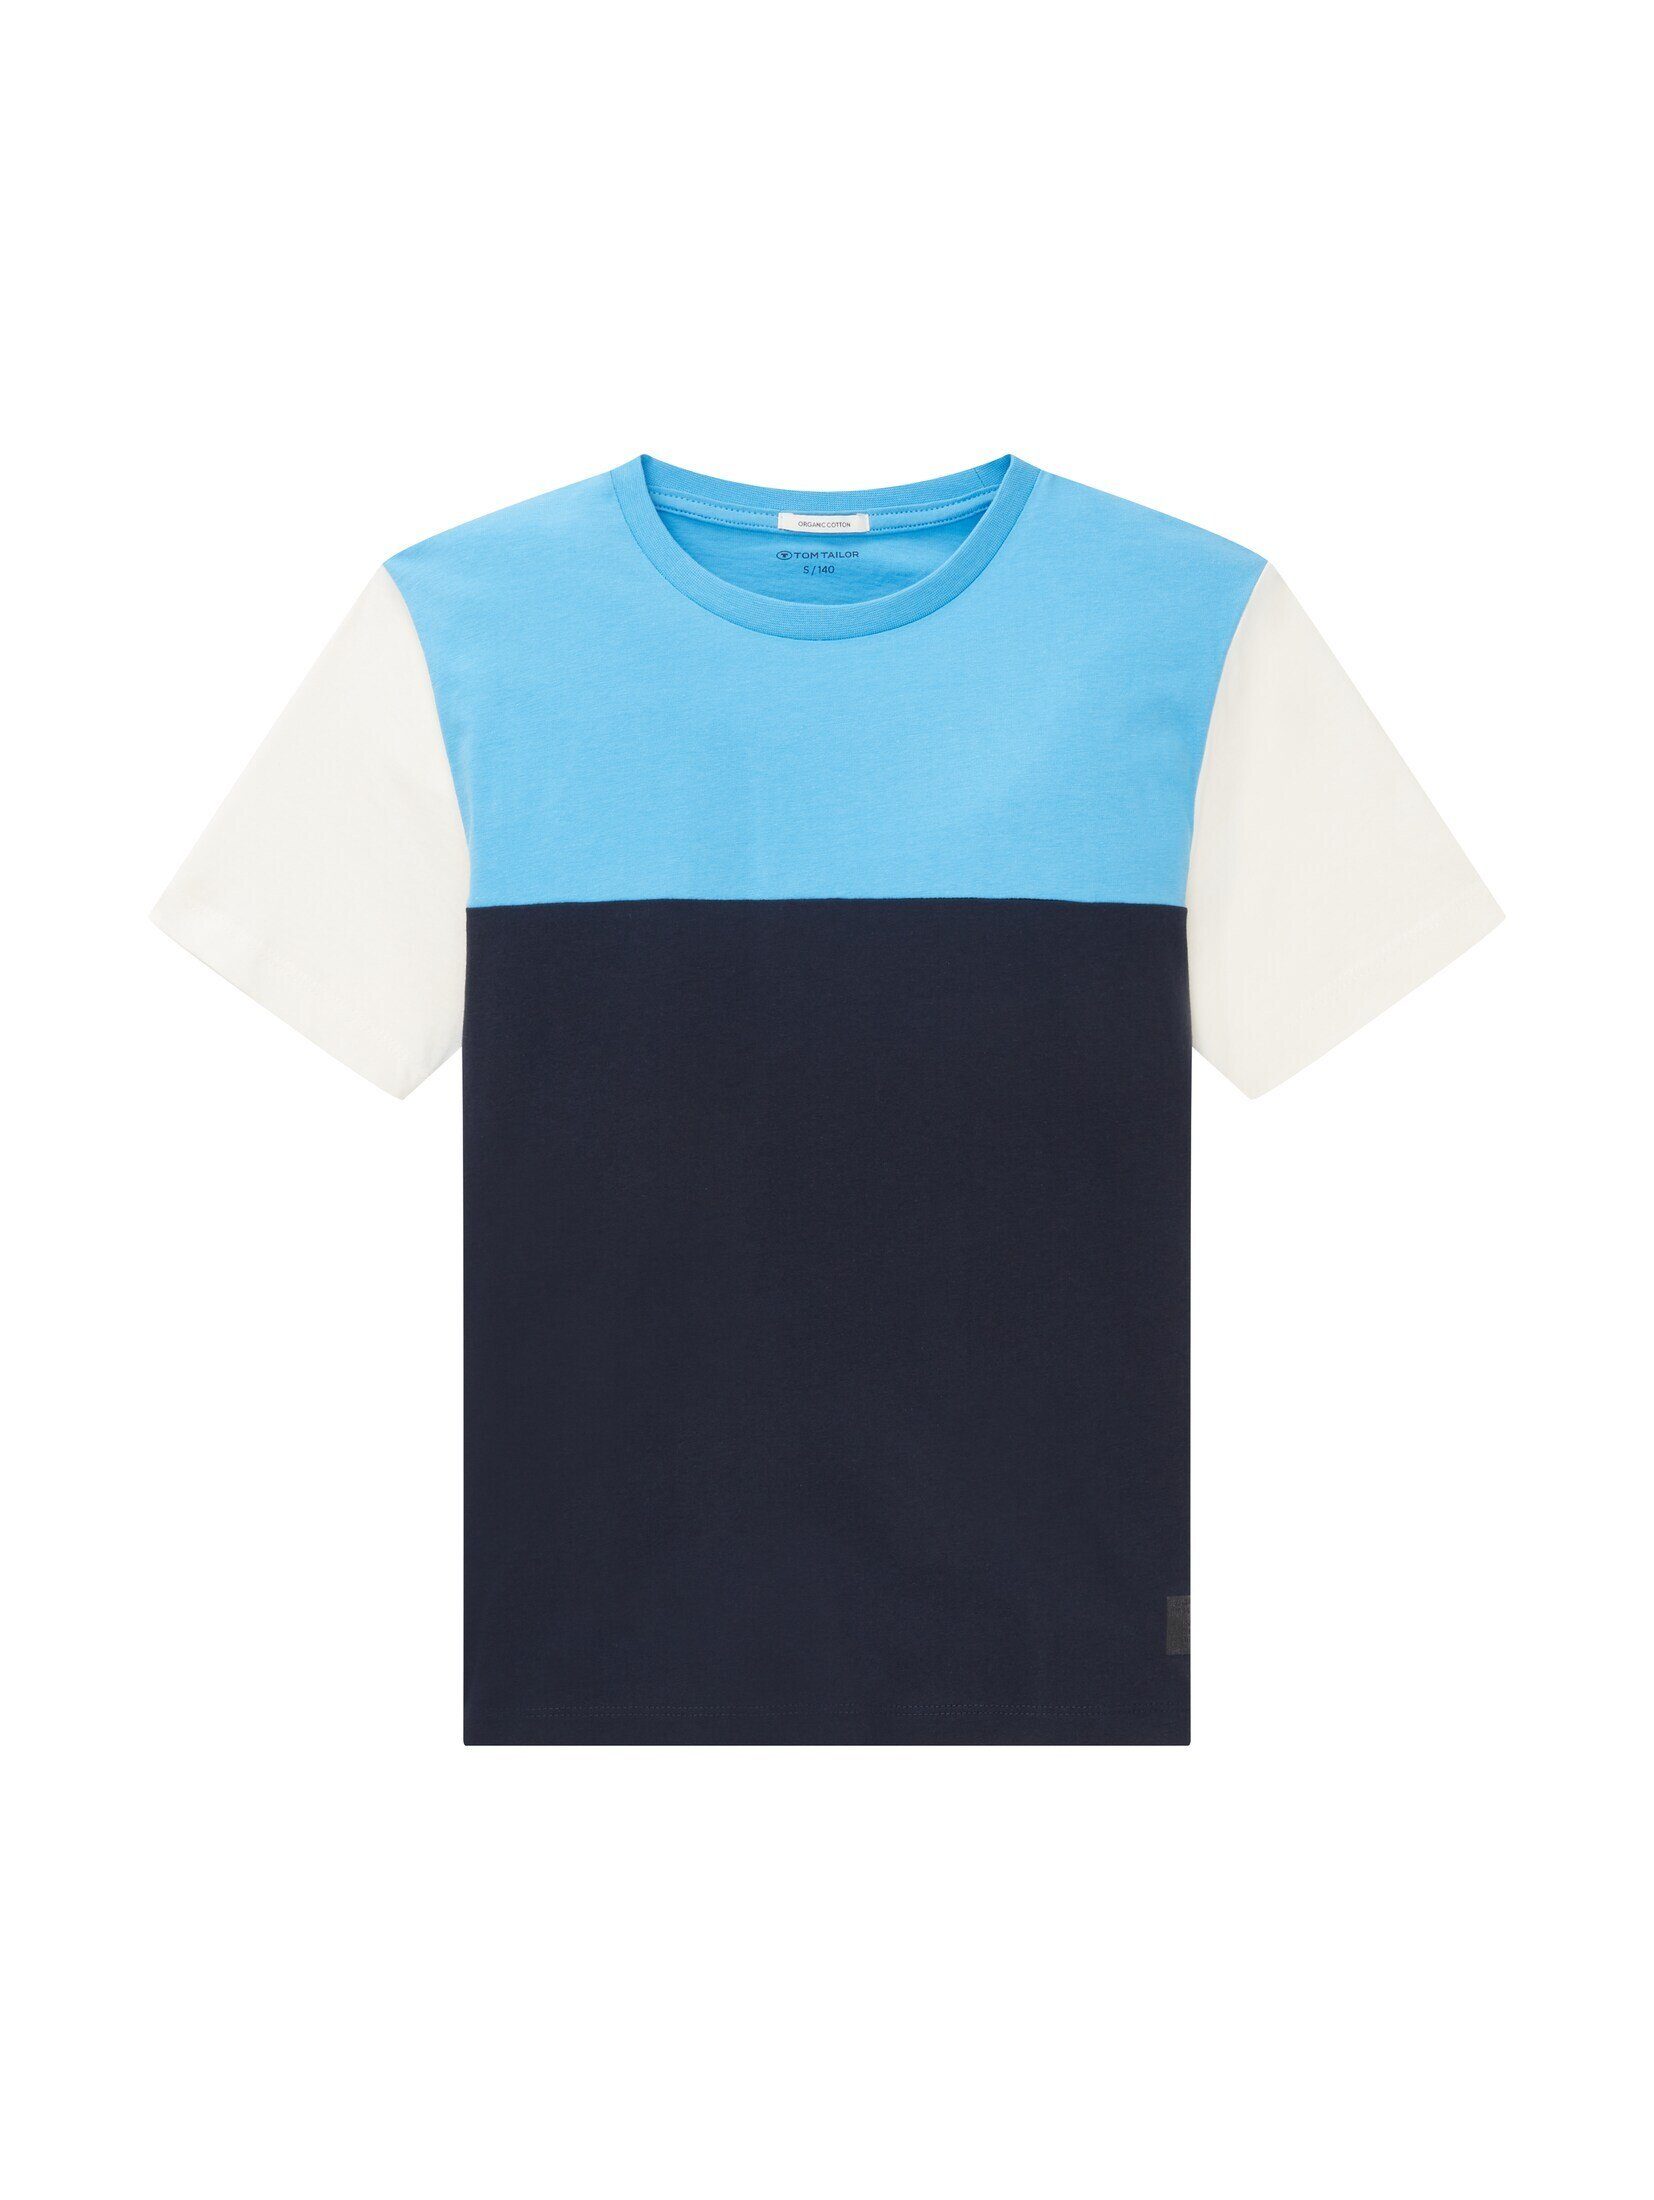 TOM TAILOR T-Shirt T-Shirt mit Colour Blocking sky captain blue